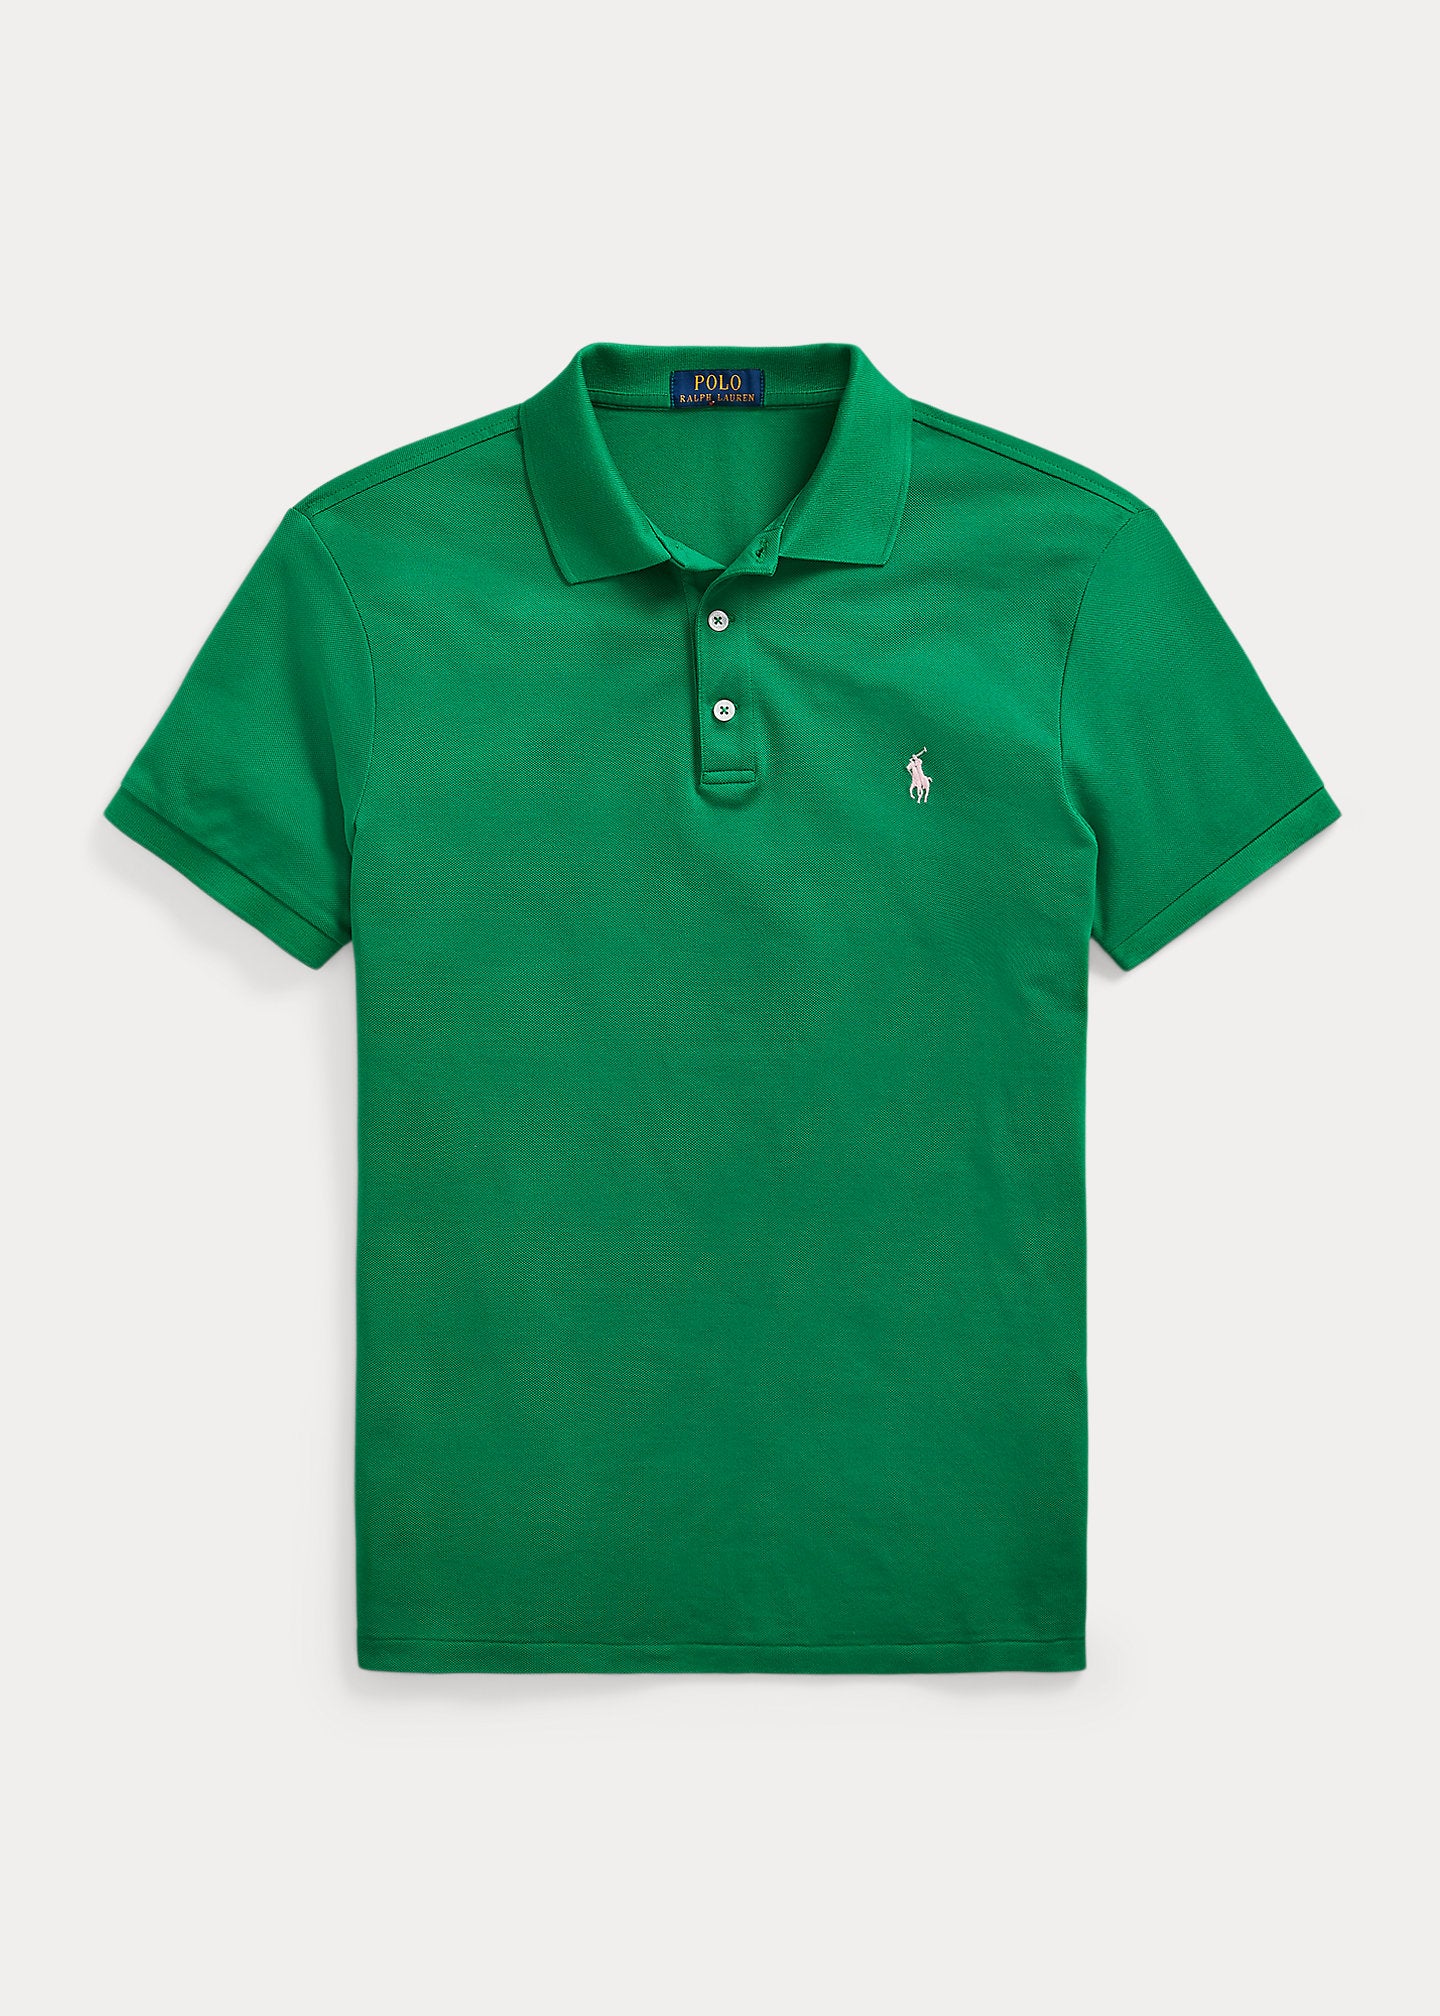 Polo pour homme Ralph Lauren cintré vert en coton piqué | Georgespaul